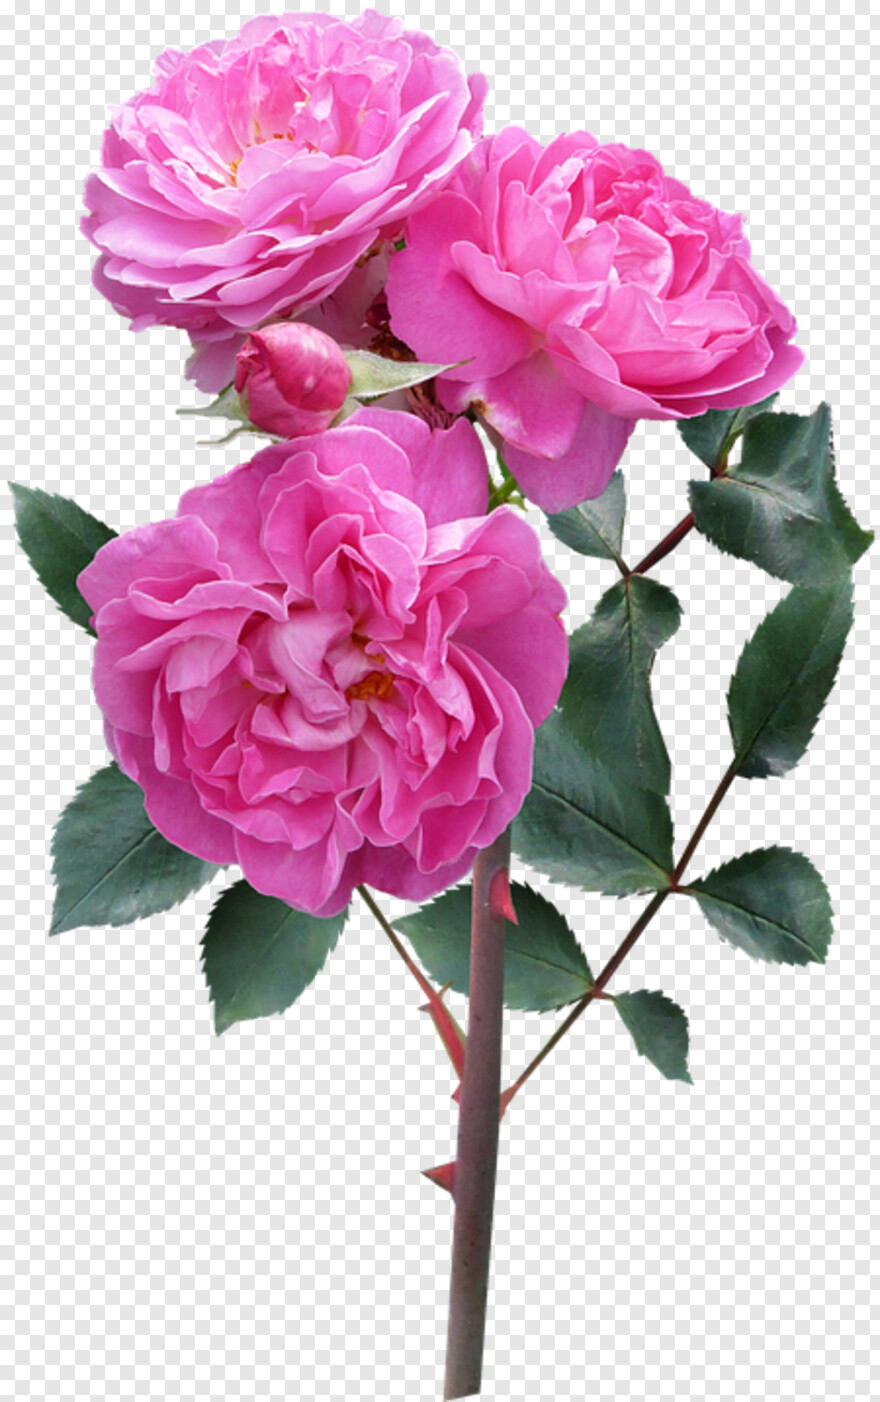  Rose Flower, Pink Rose Flower, Single Rose Flower, Rose Flower Vector, Pink Flower, Flower Stem